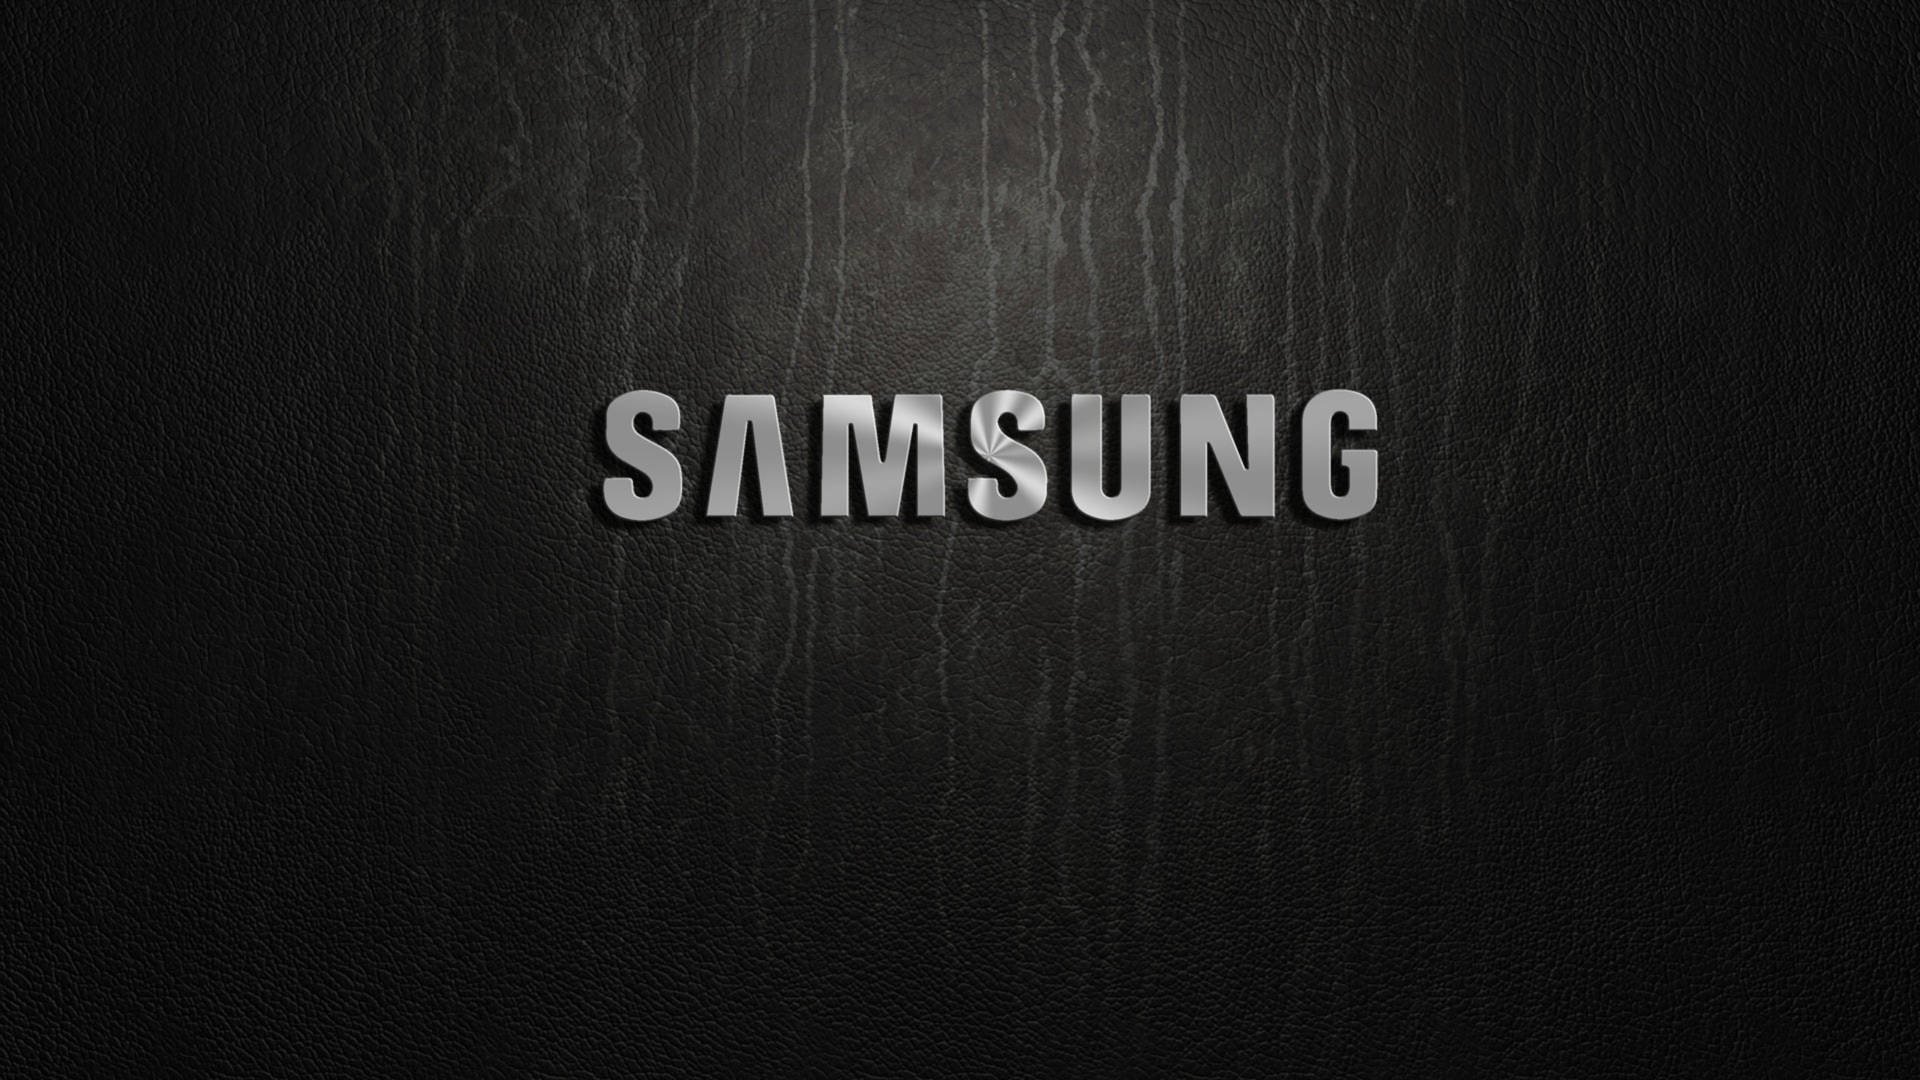 Logotipode Samsung En Color Plata Sobre Fondo Negro. Fondo de pantalla